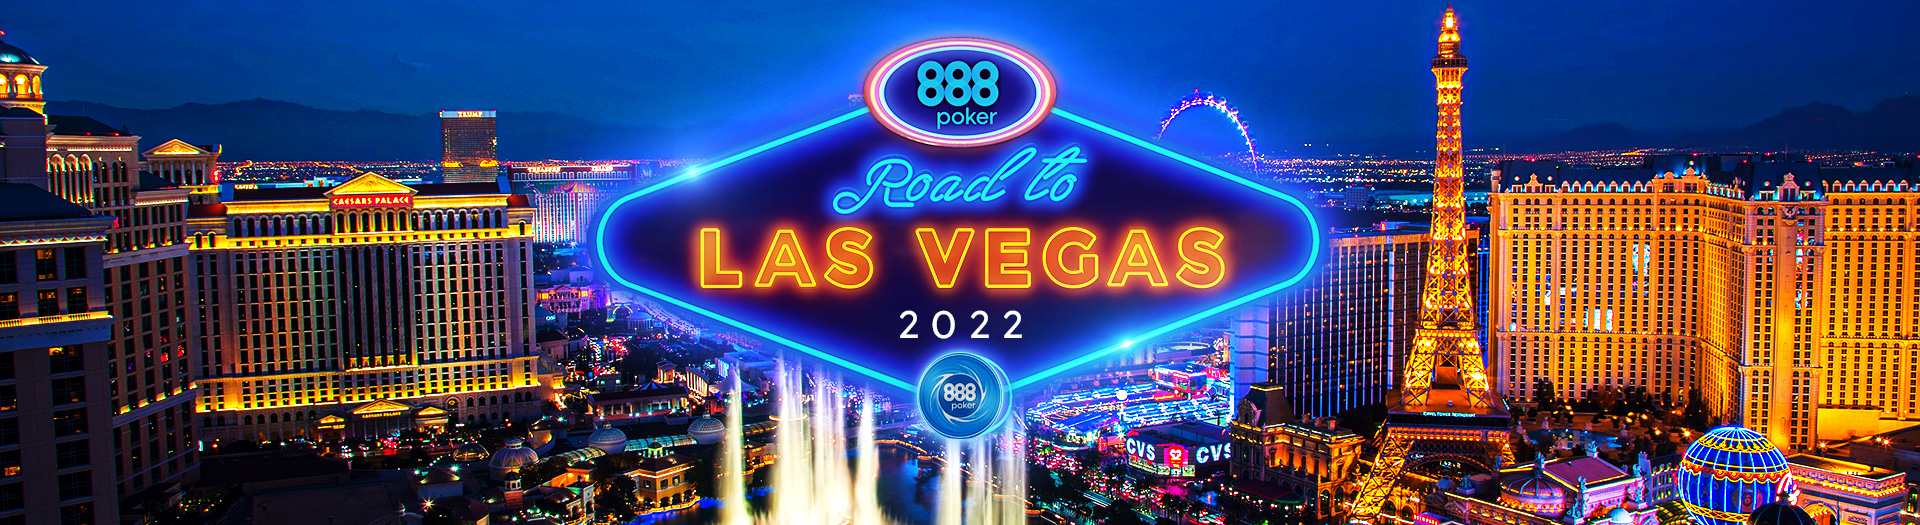 Road to Las Vegas 2022